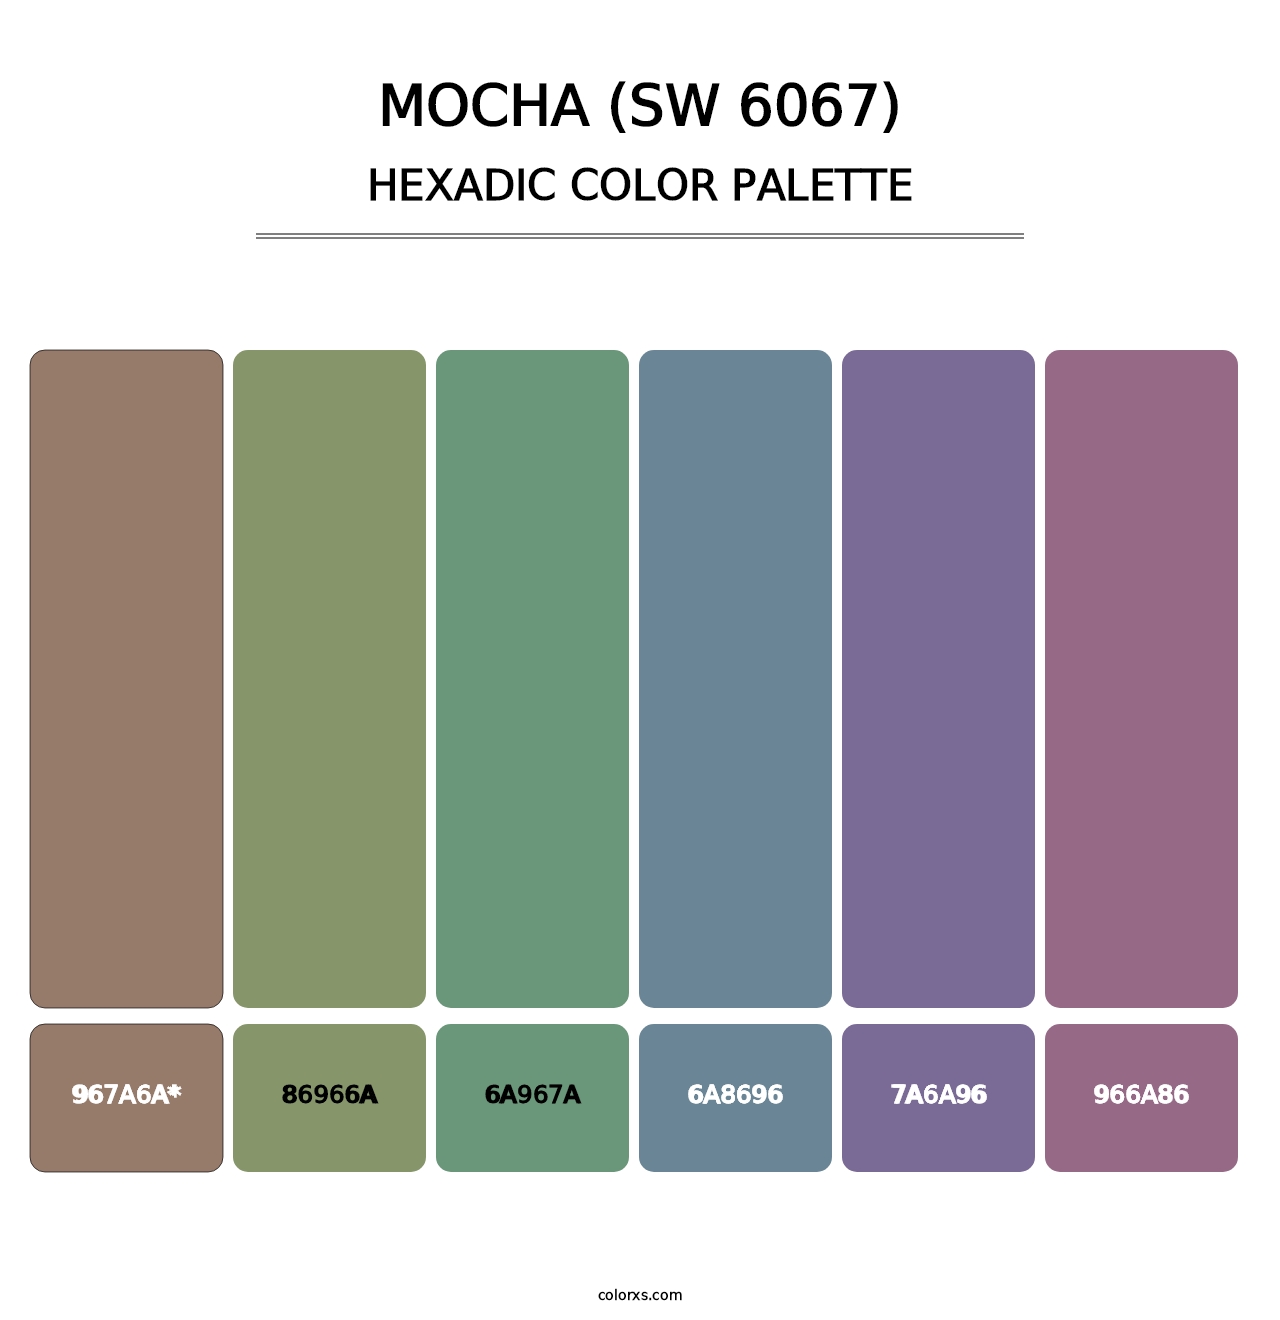 Mocha (SW 6067) - Hexadic Color Palette